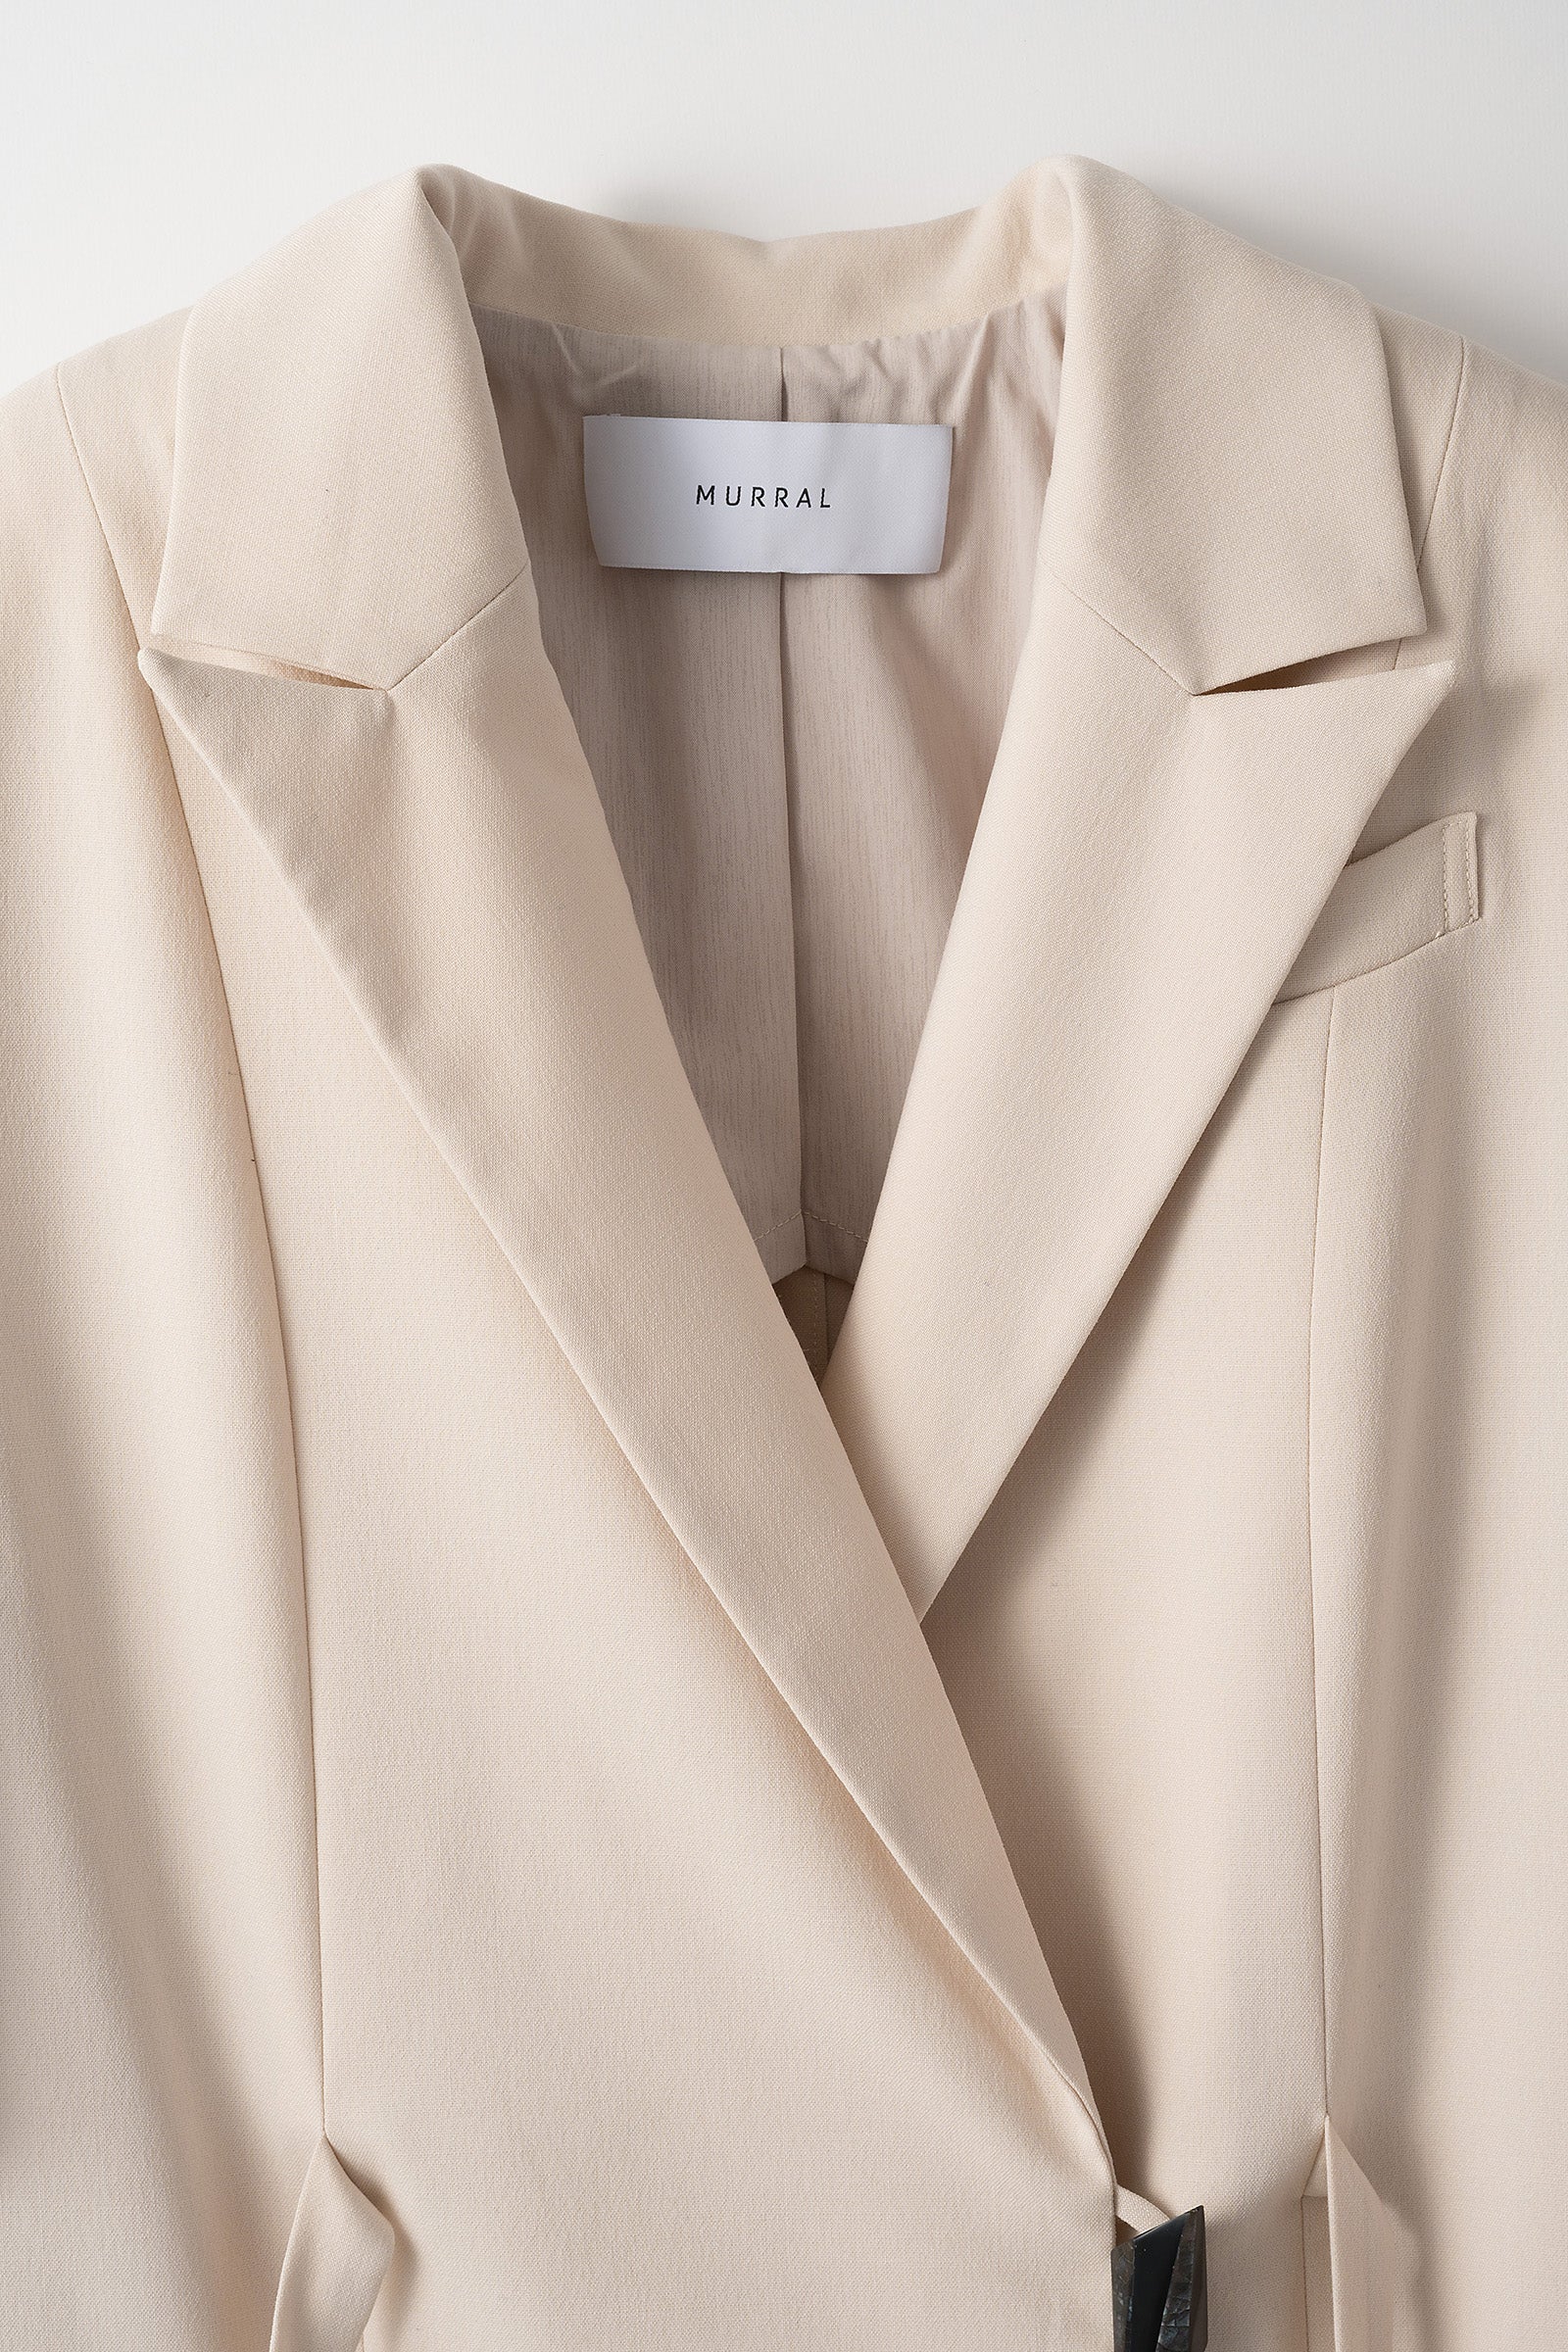 slit design sleeve jacket【brown】